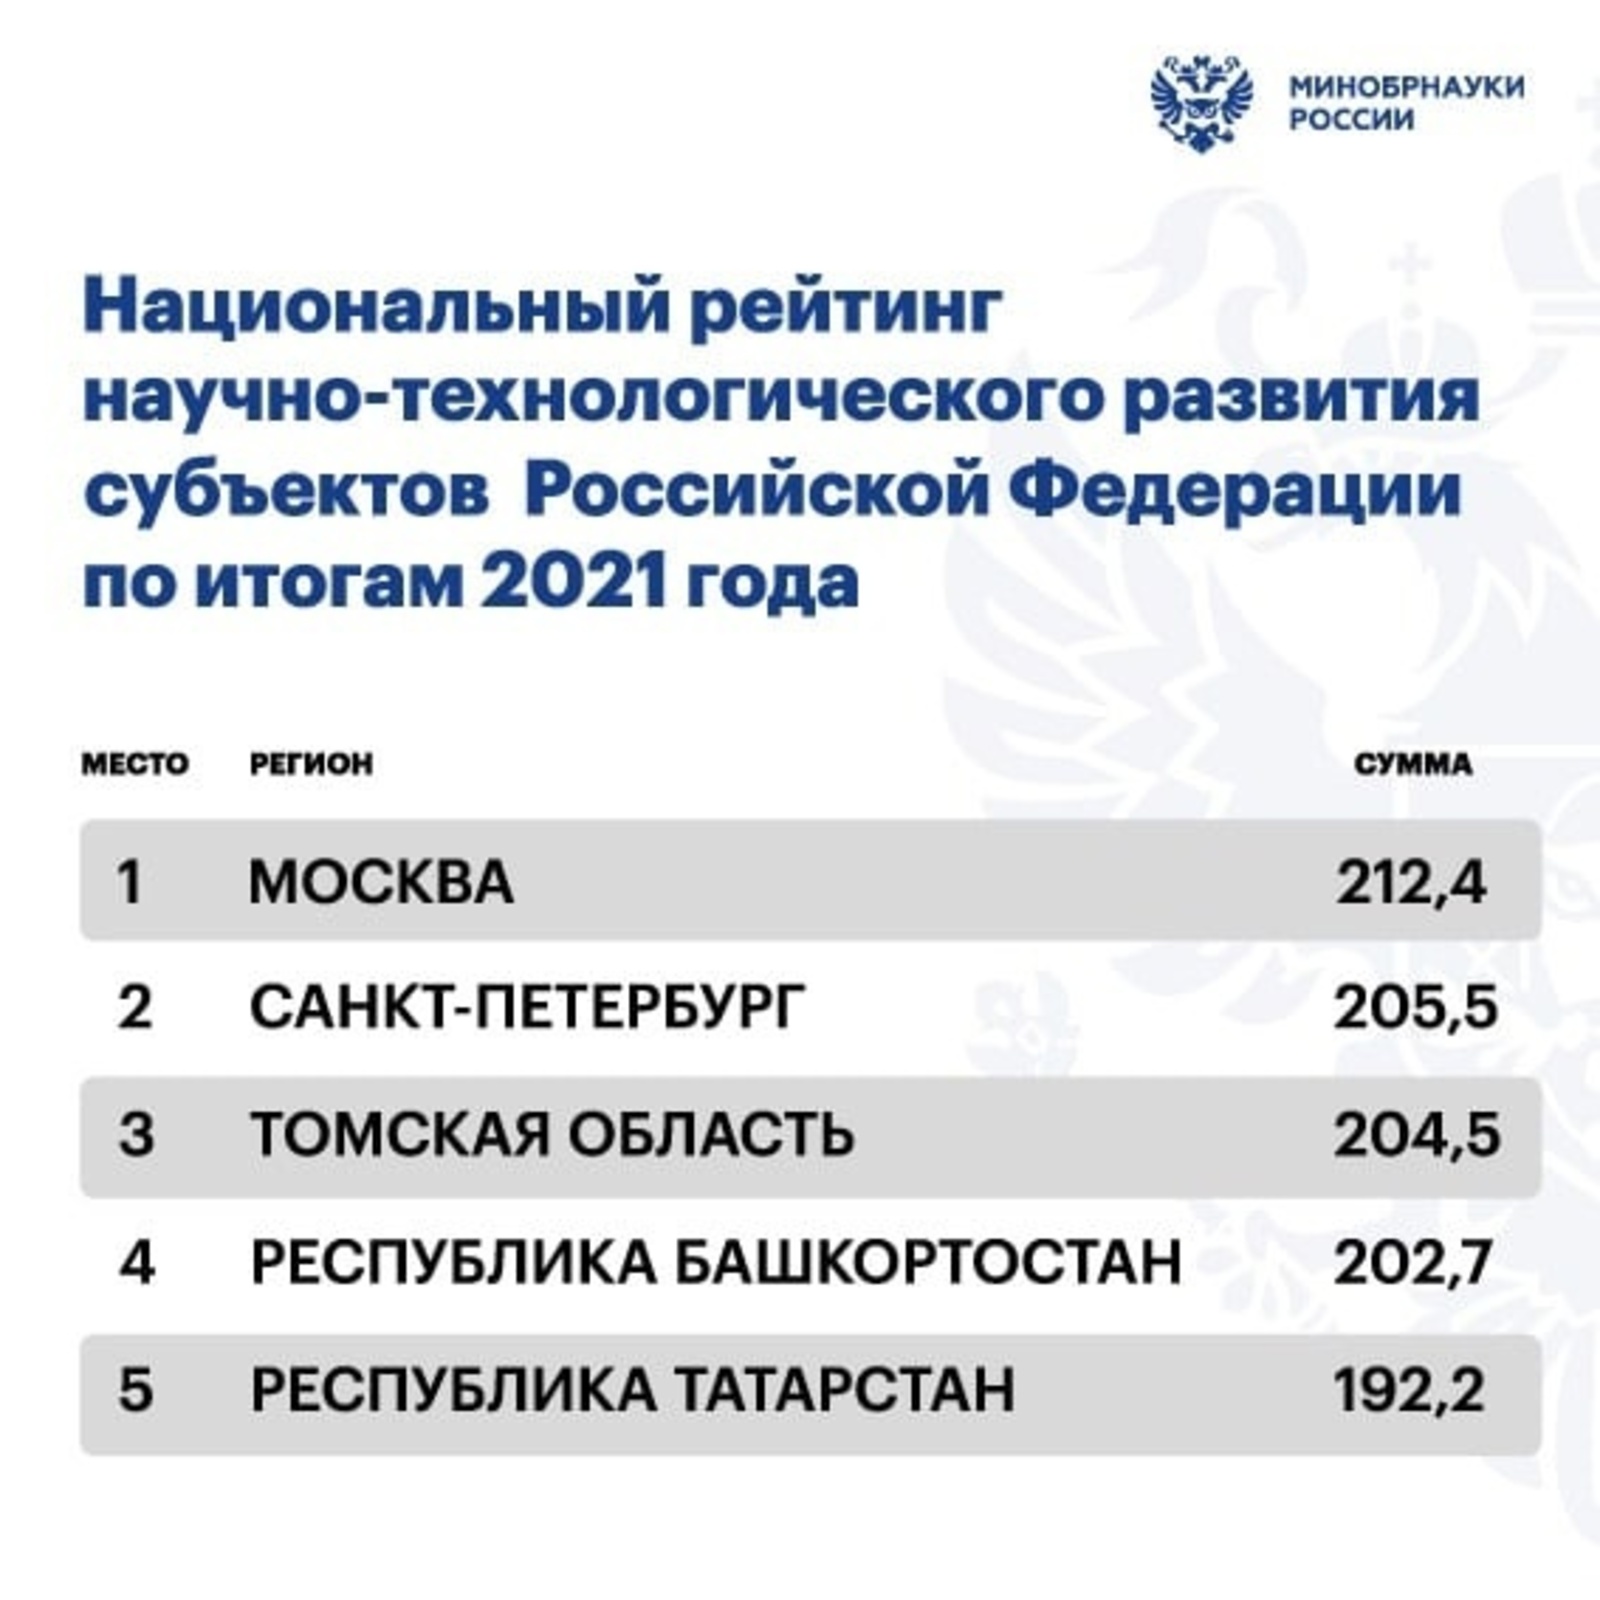 Башкортостан занял четвертое место в первом Национальном рейтинге научно-технологического развития регионов за 2021 год